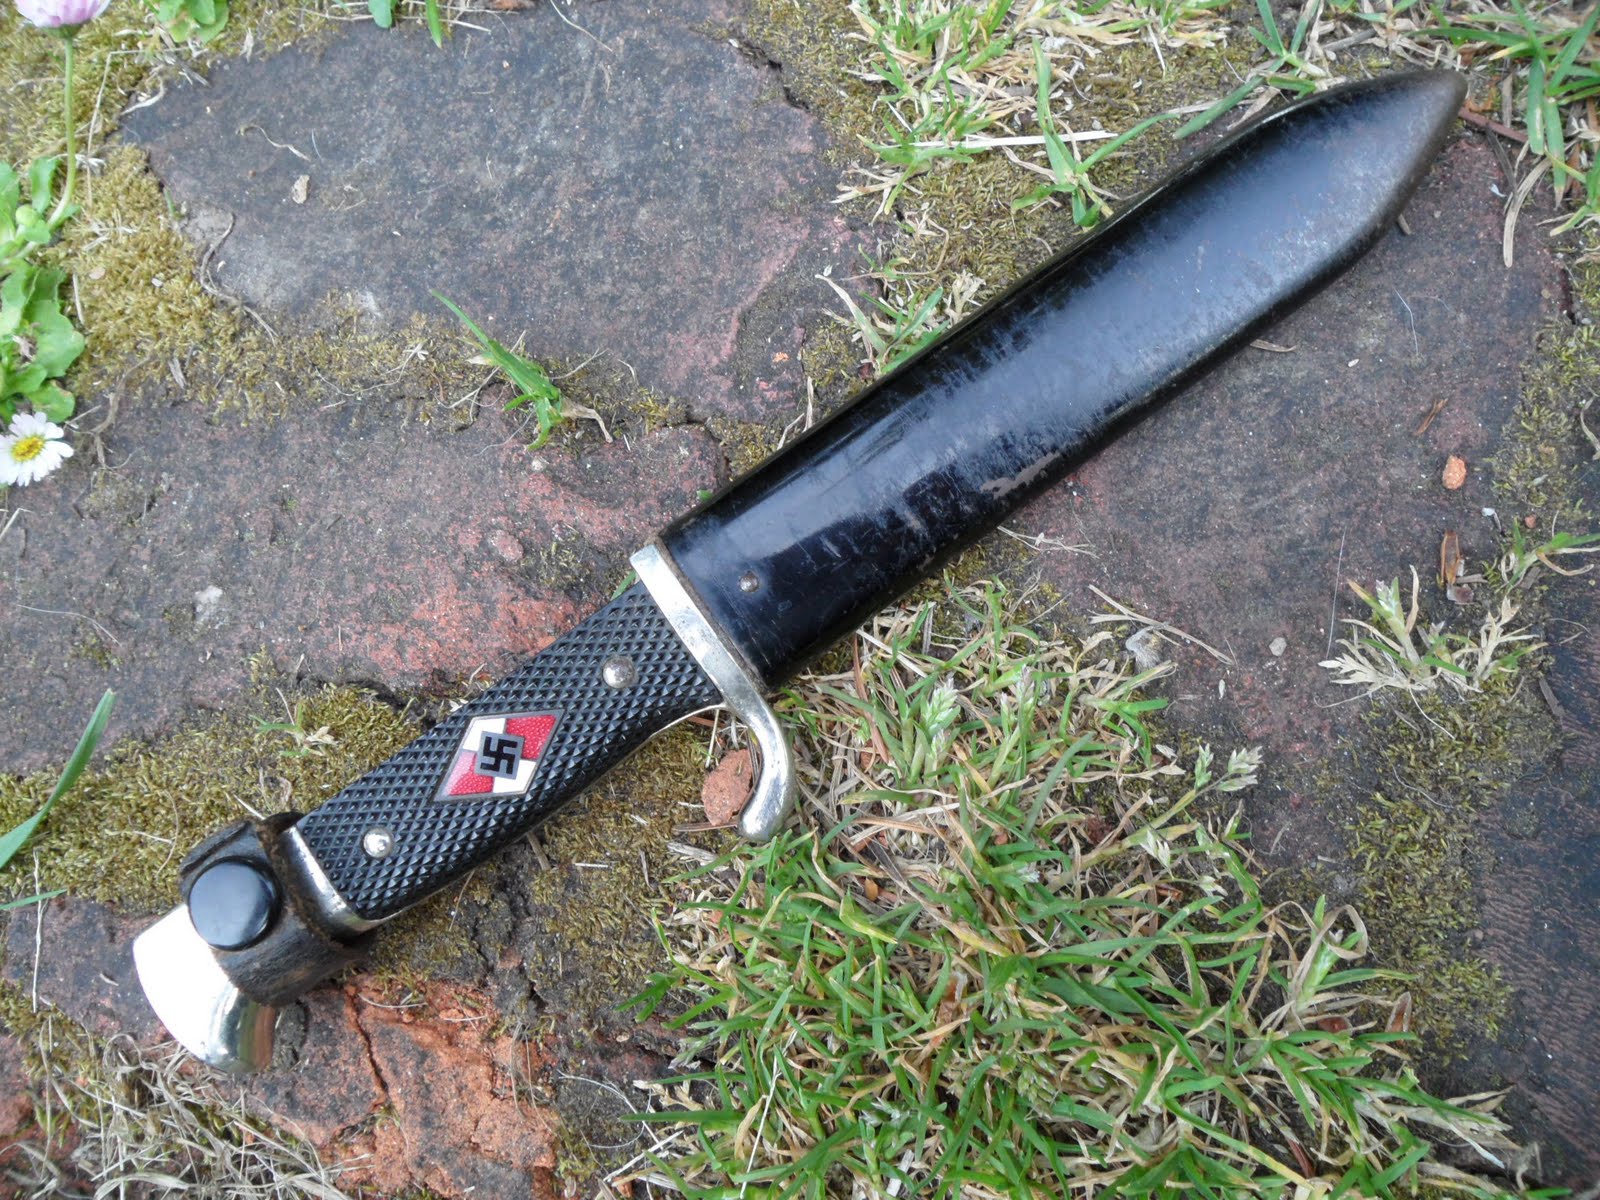 Hitler Jugend Messer, Hitler Youth Knife.